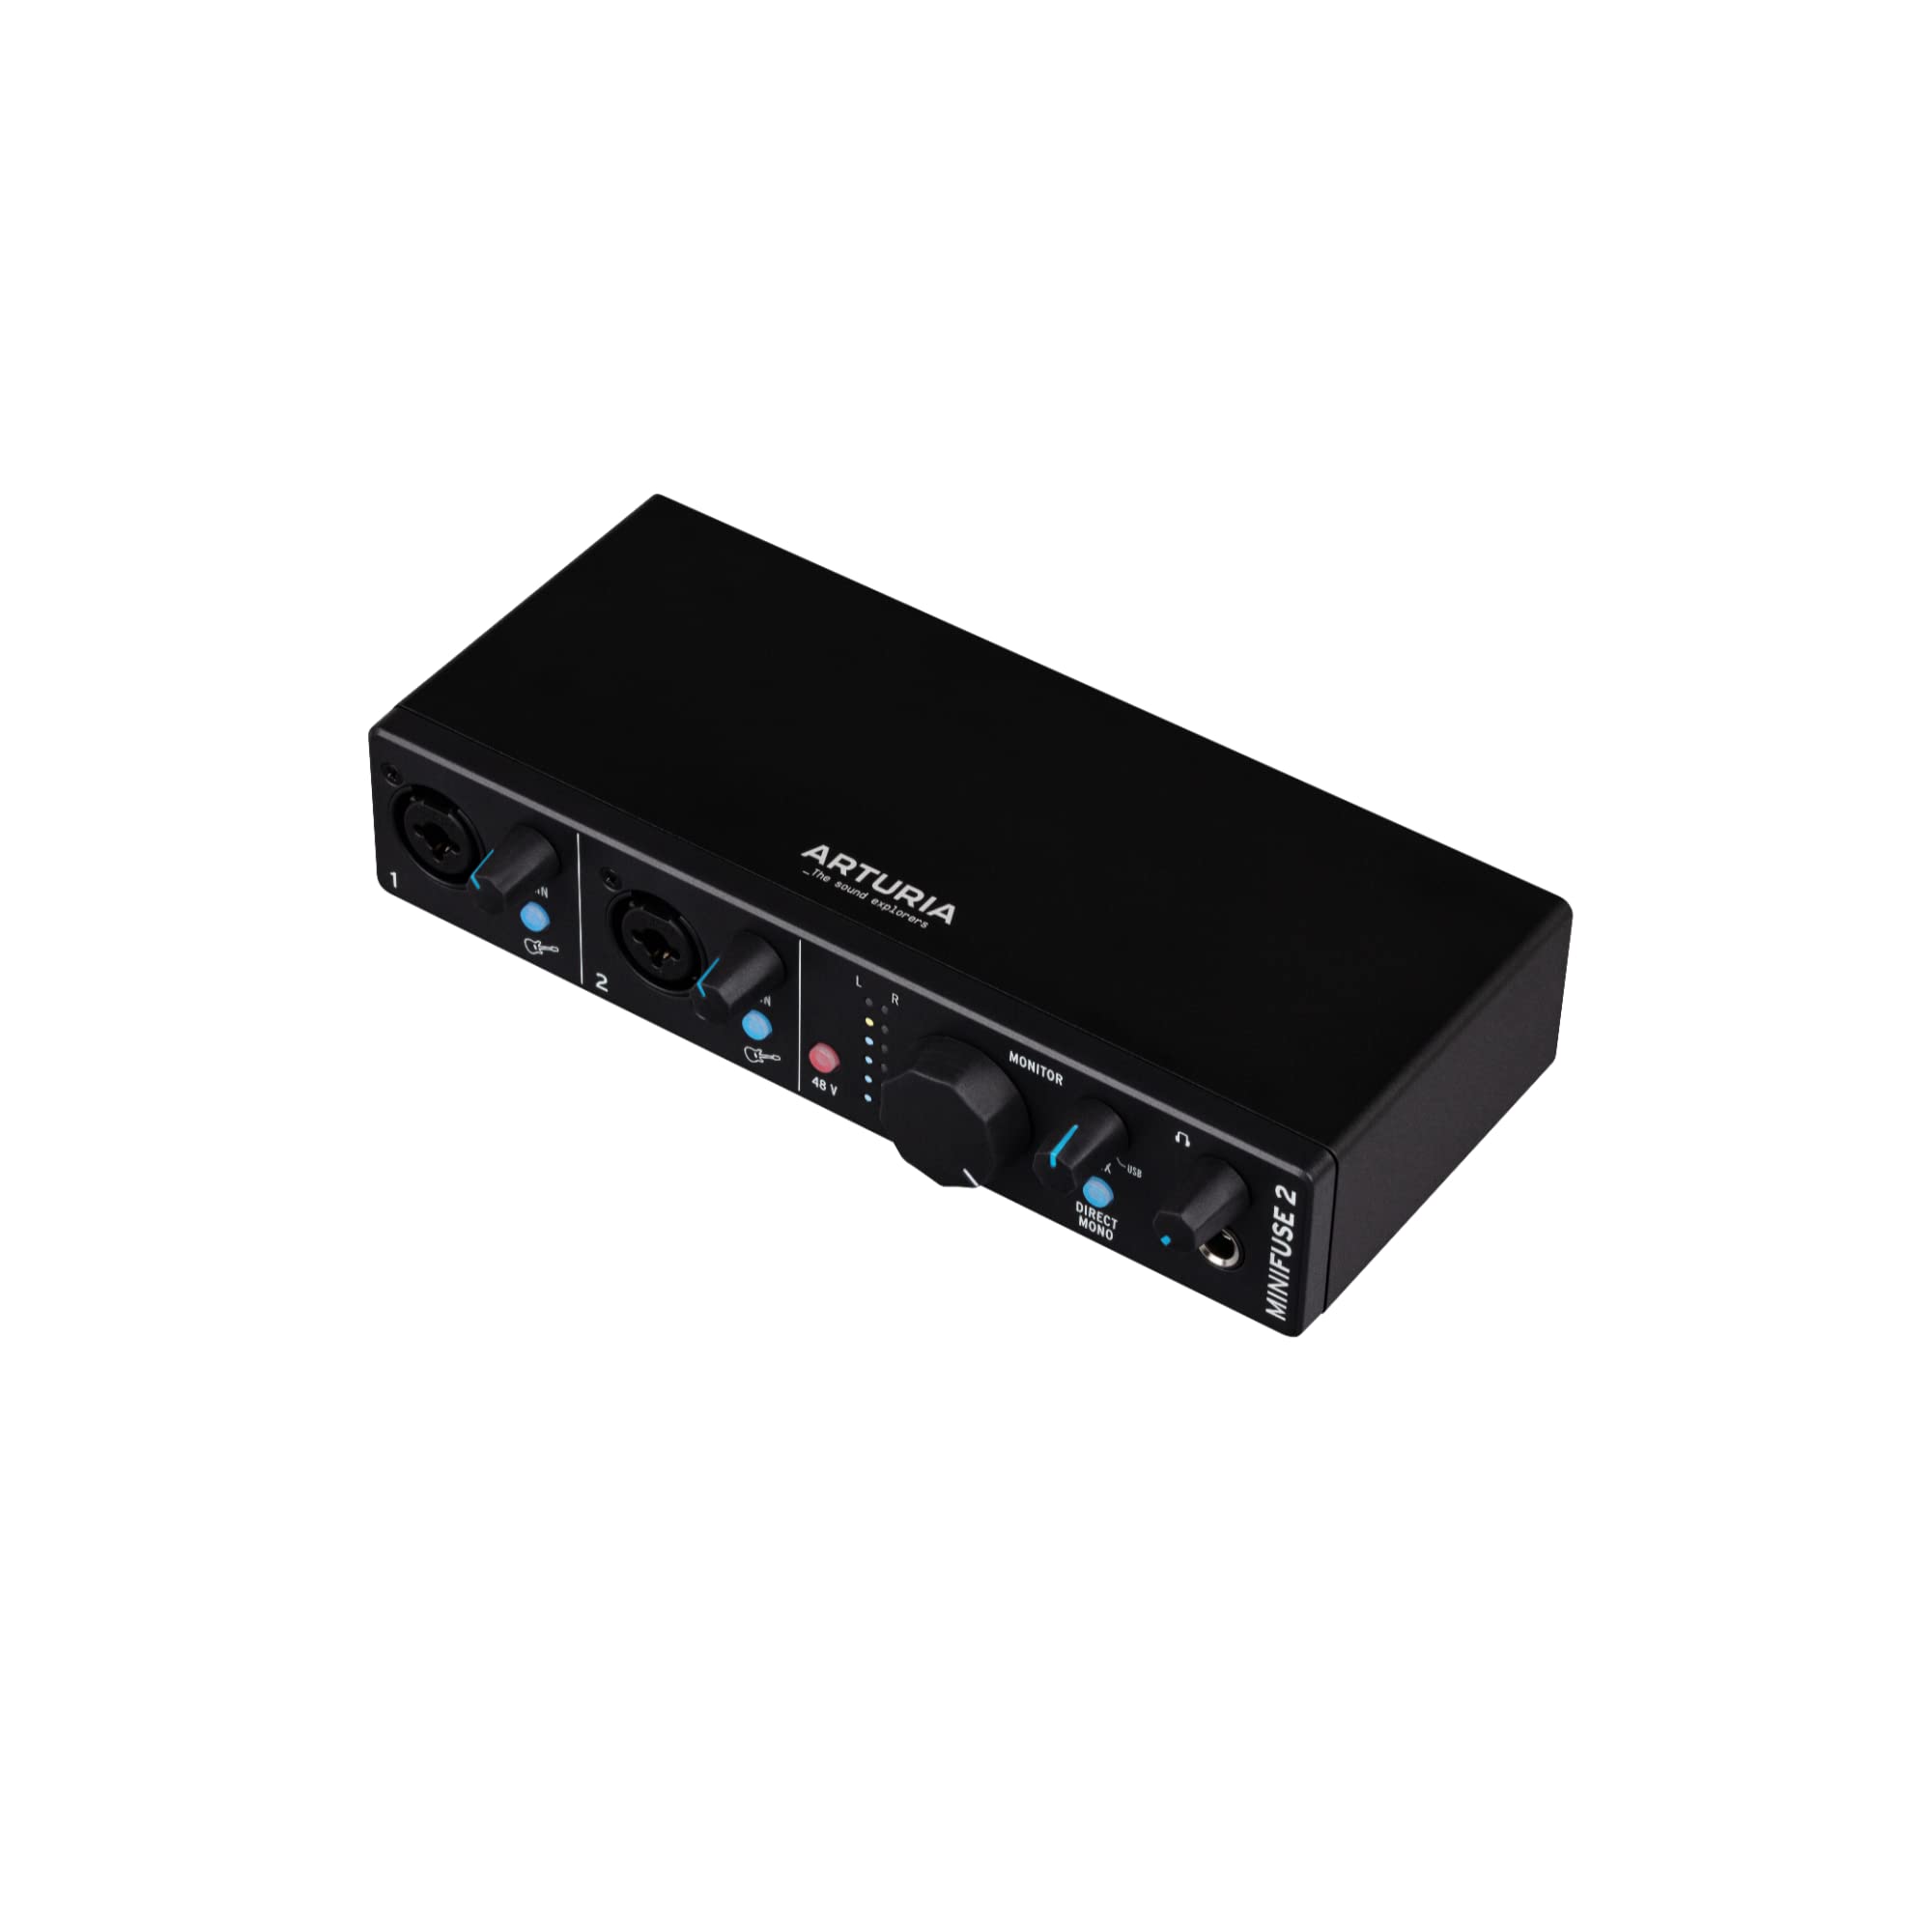 Exclusif Arturia - MiniFuse 2 - Interface Audio USB Compacte de Qualité Studio pour Production, Podcasting, Guitare, Fournie avec une Suite de Logiciels Créatifs - Noir QlIKpJP8y mode